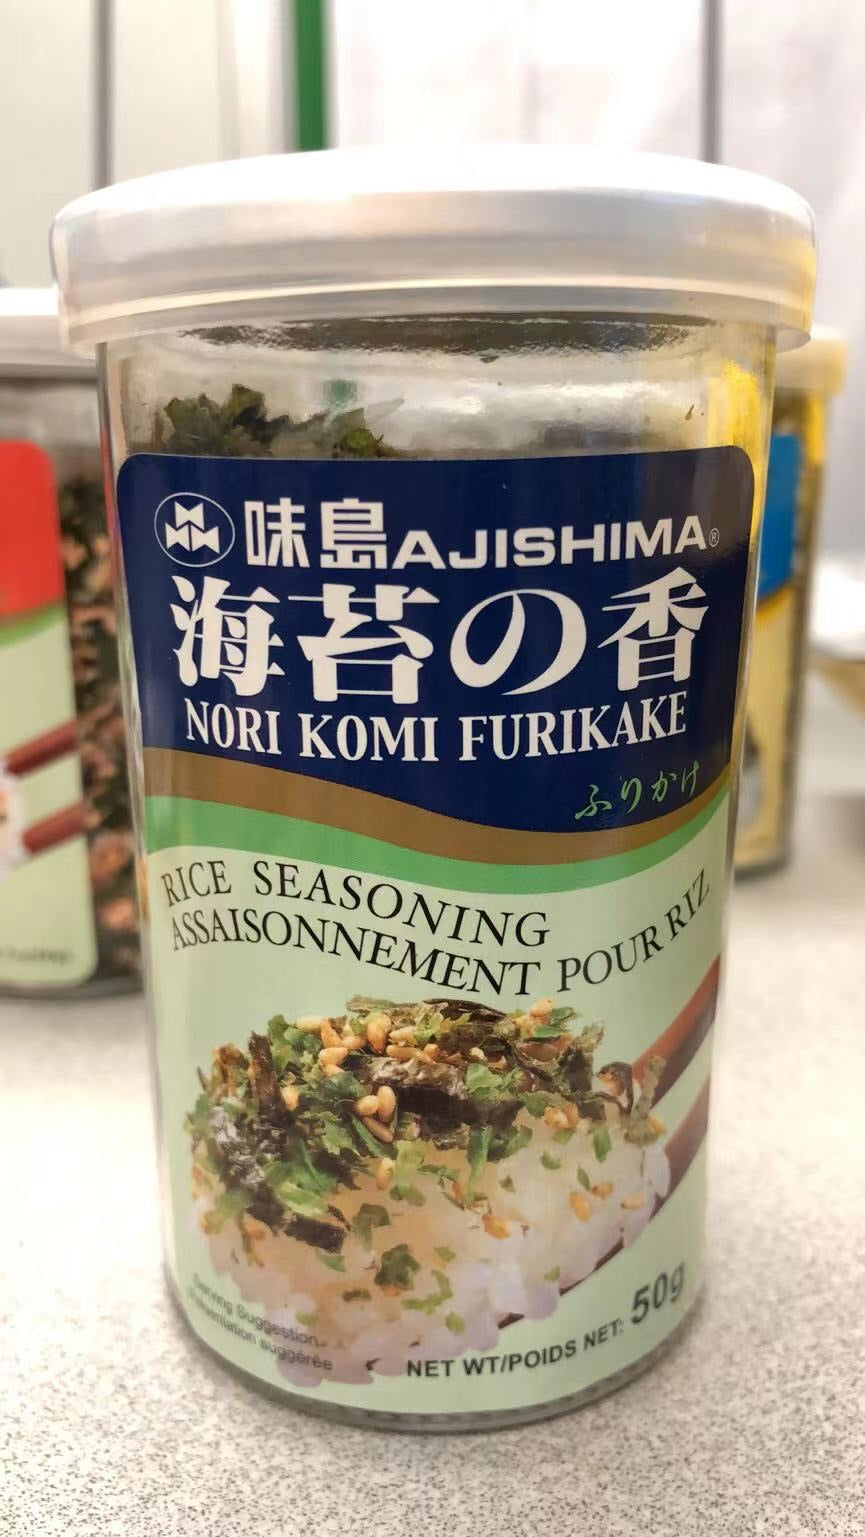 FURIKAKE Nori Komi Assaisonnement pour riz AJISHIMA